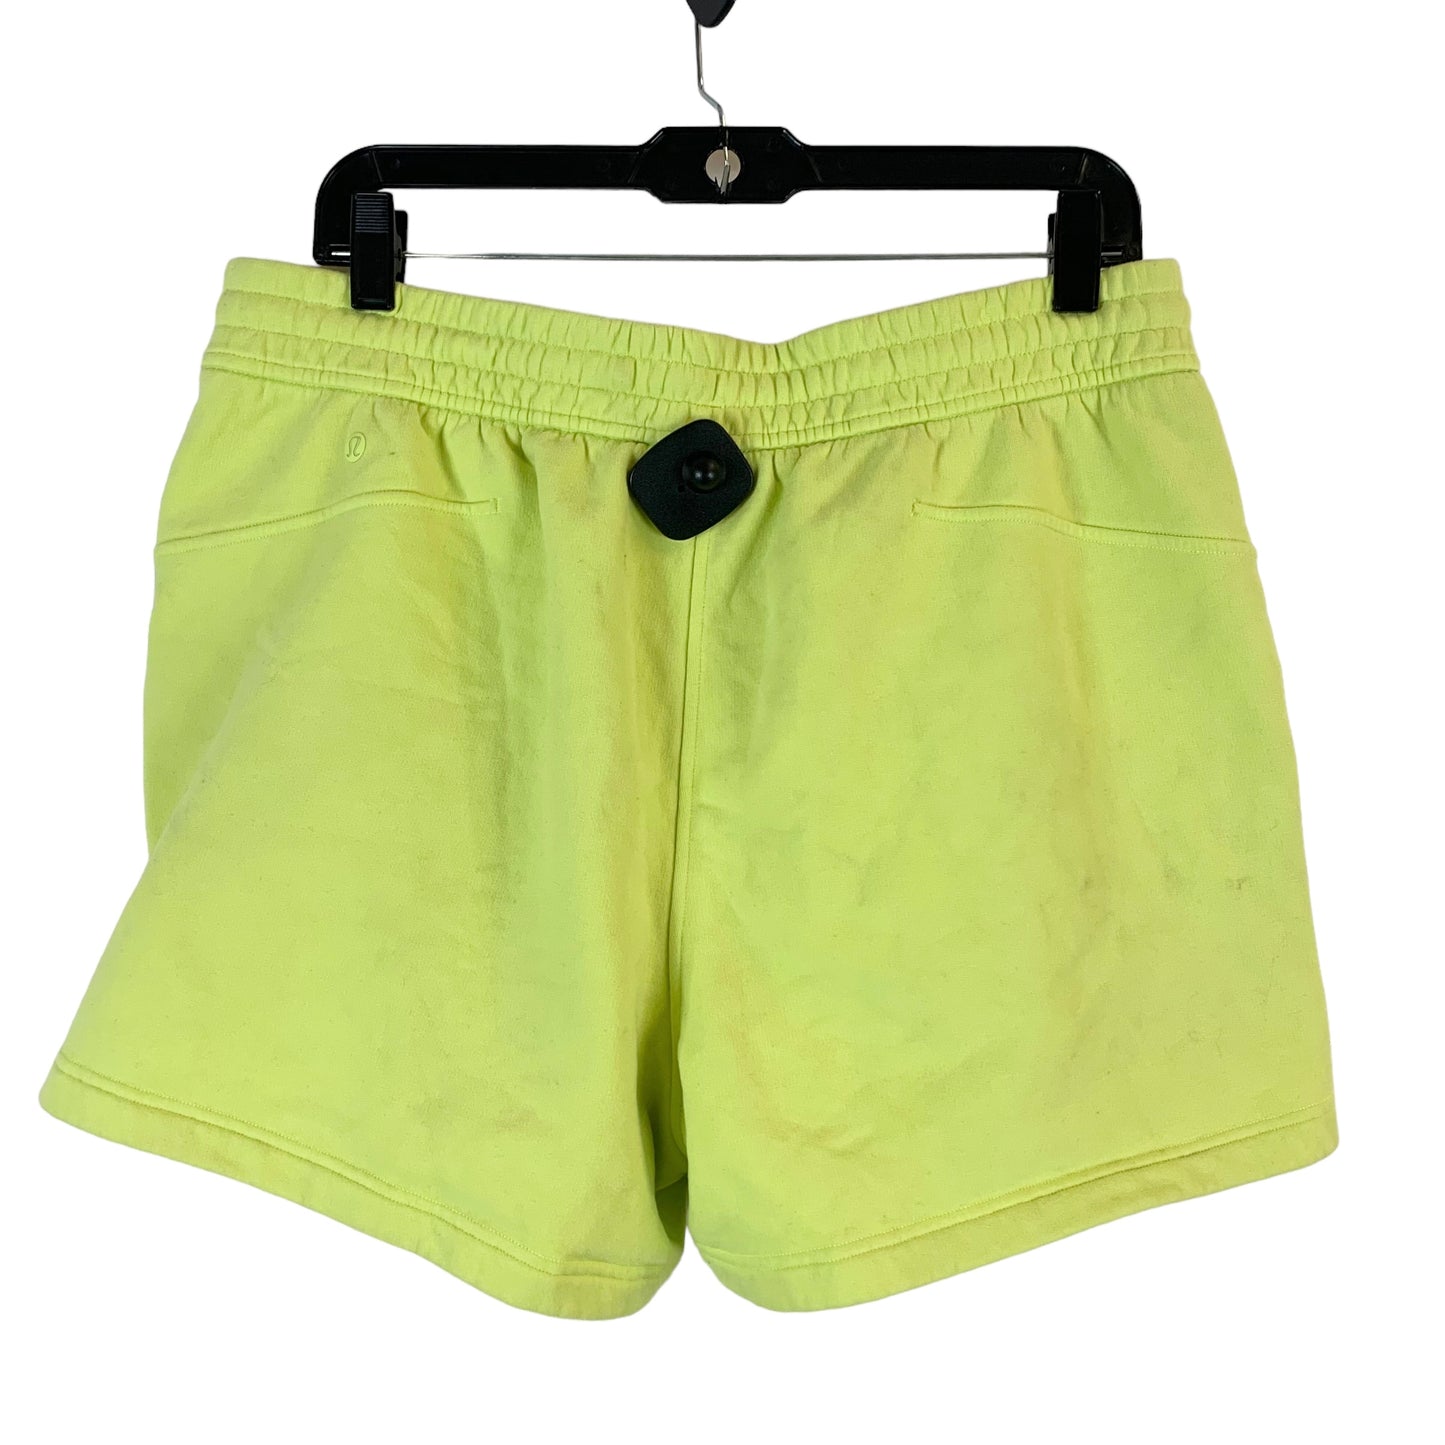 Athletic Shorts By Lululemon  Size: 12